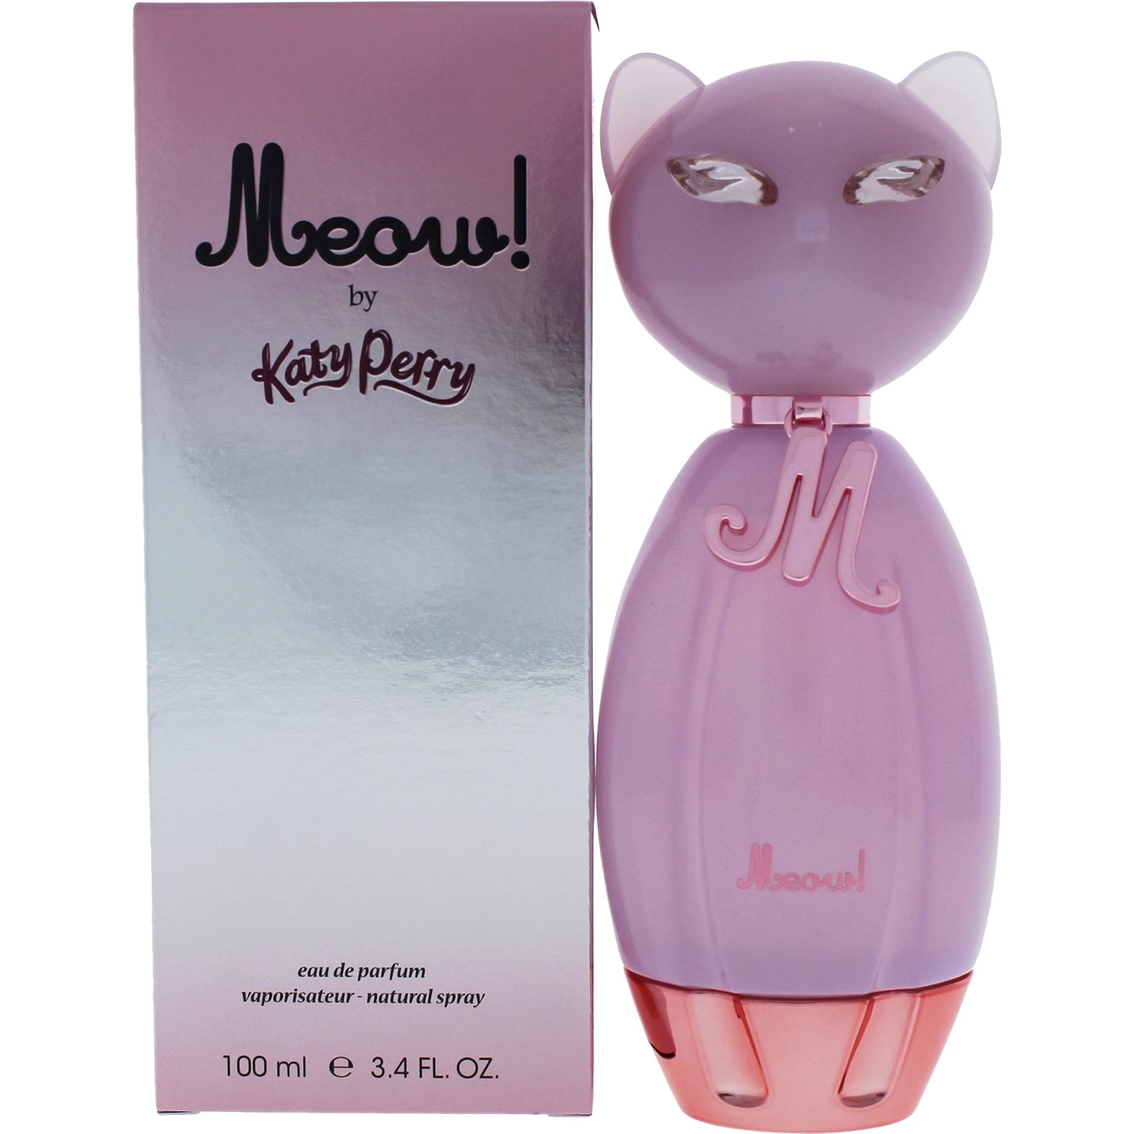 Katy Perry Meow! Eau de Parfum Spray - Image 2 of 2